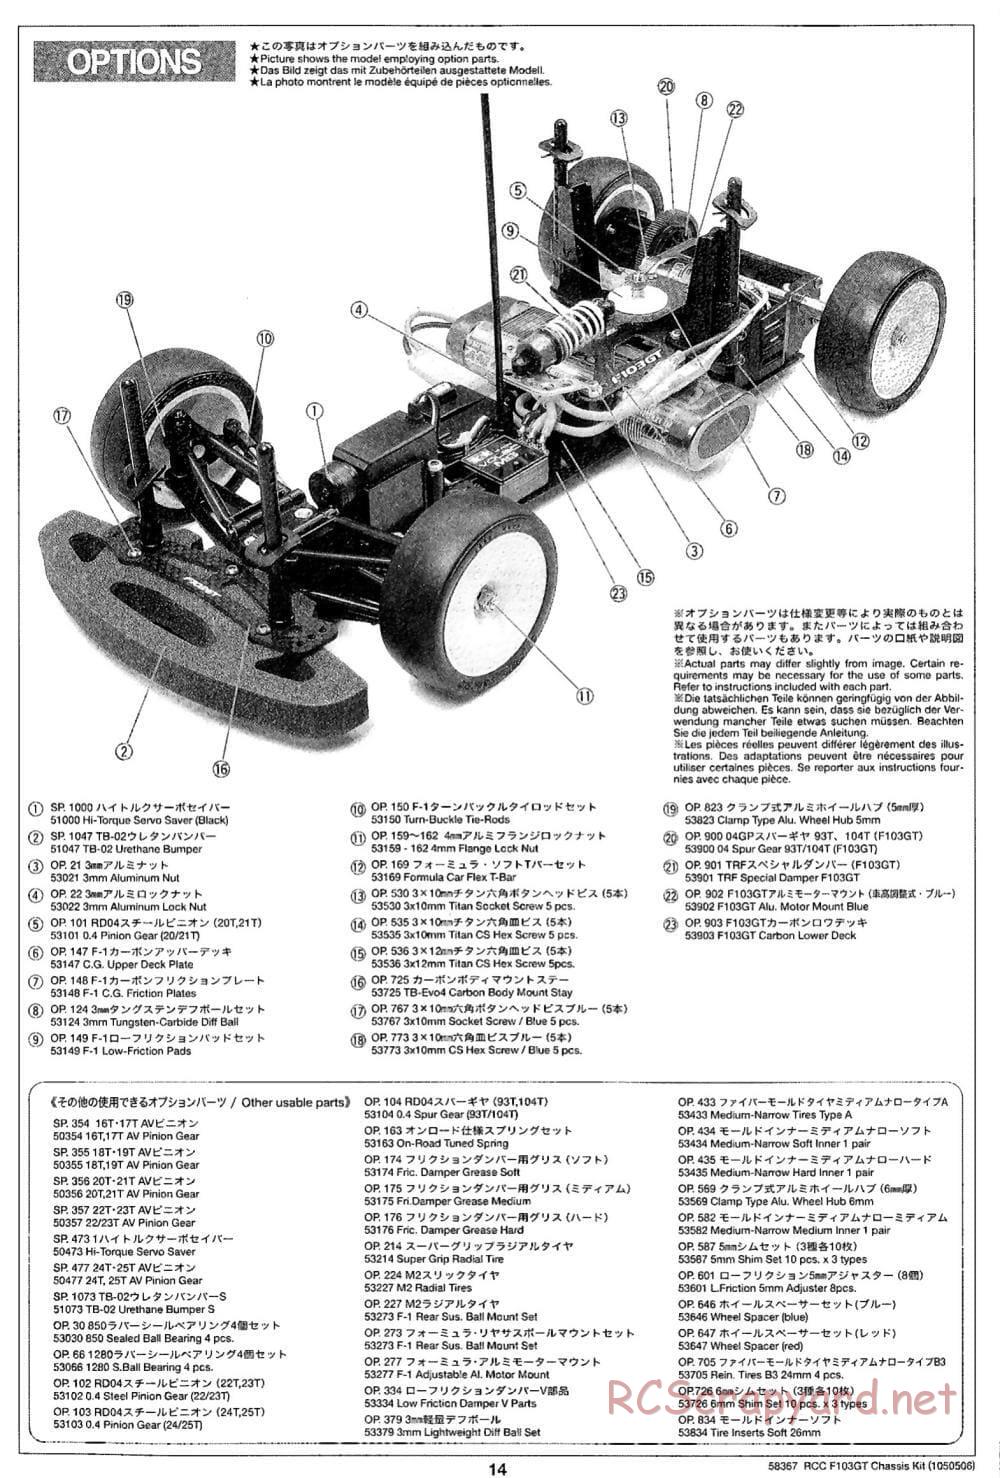 Tamiya - F103GT Chassis Kit - Manual - Page 14